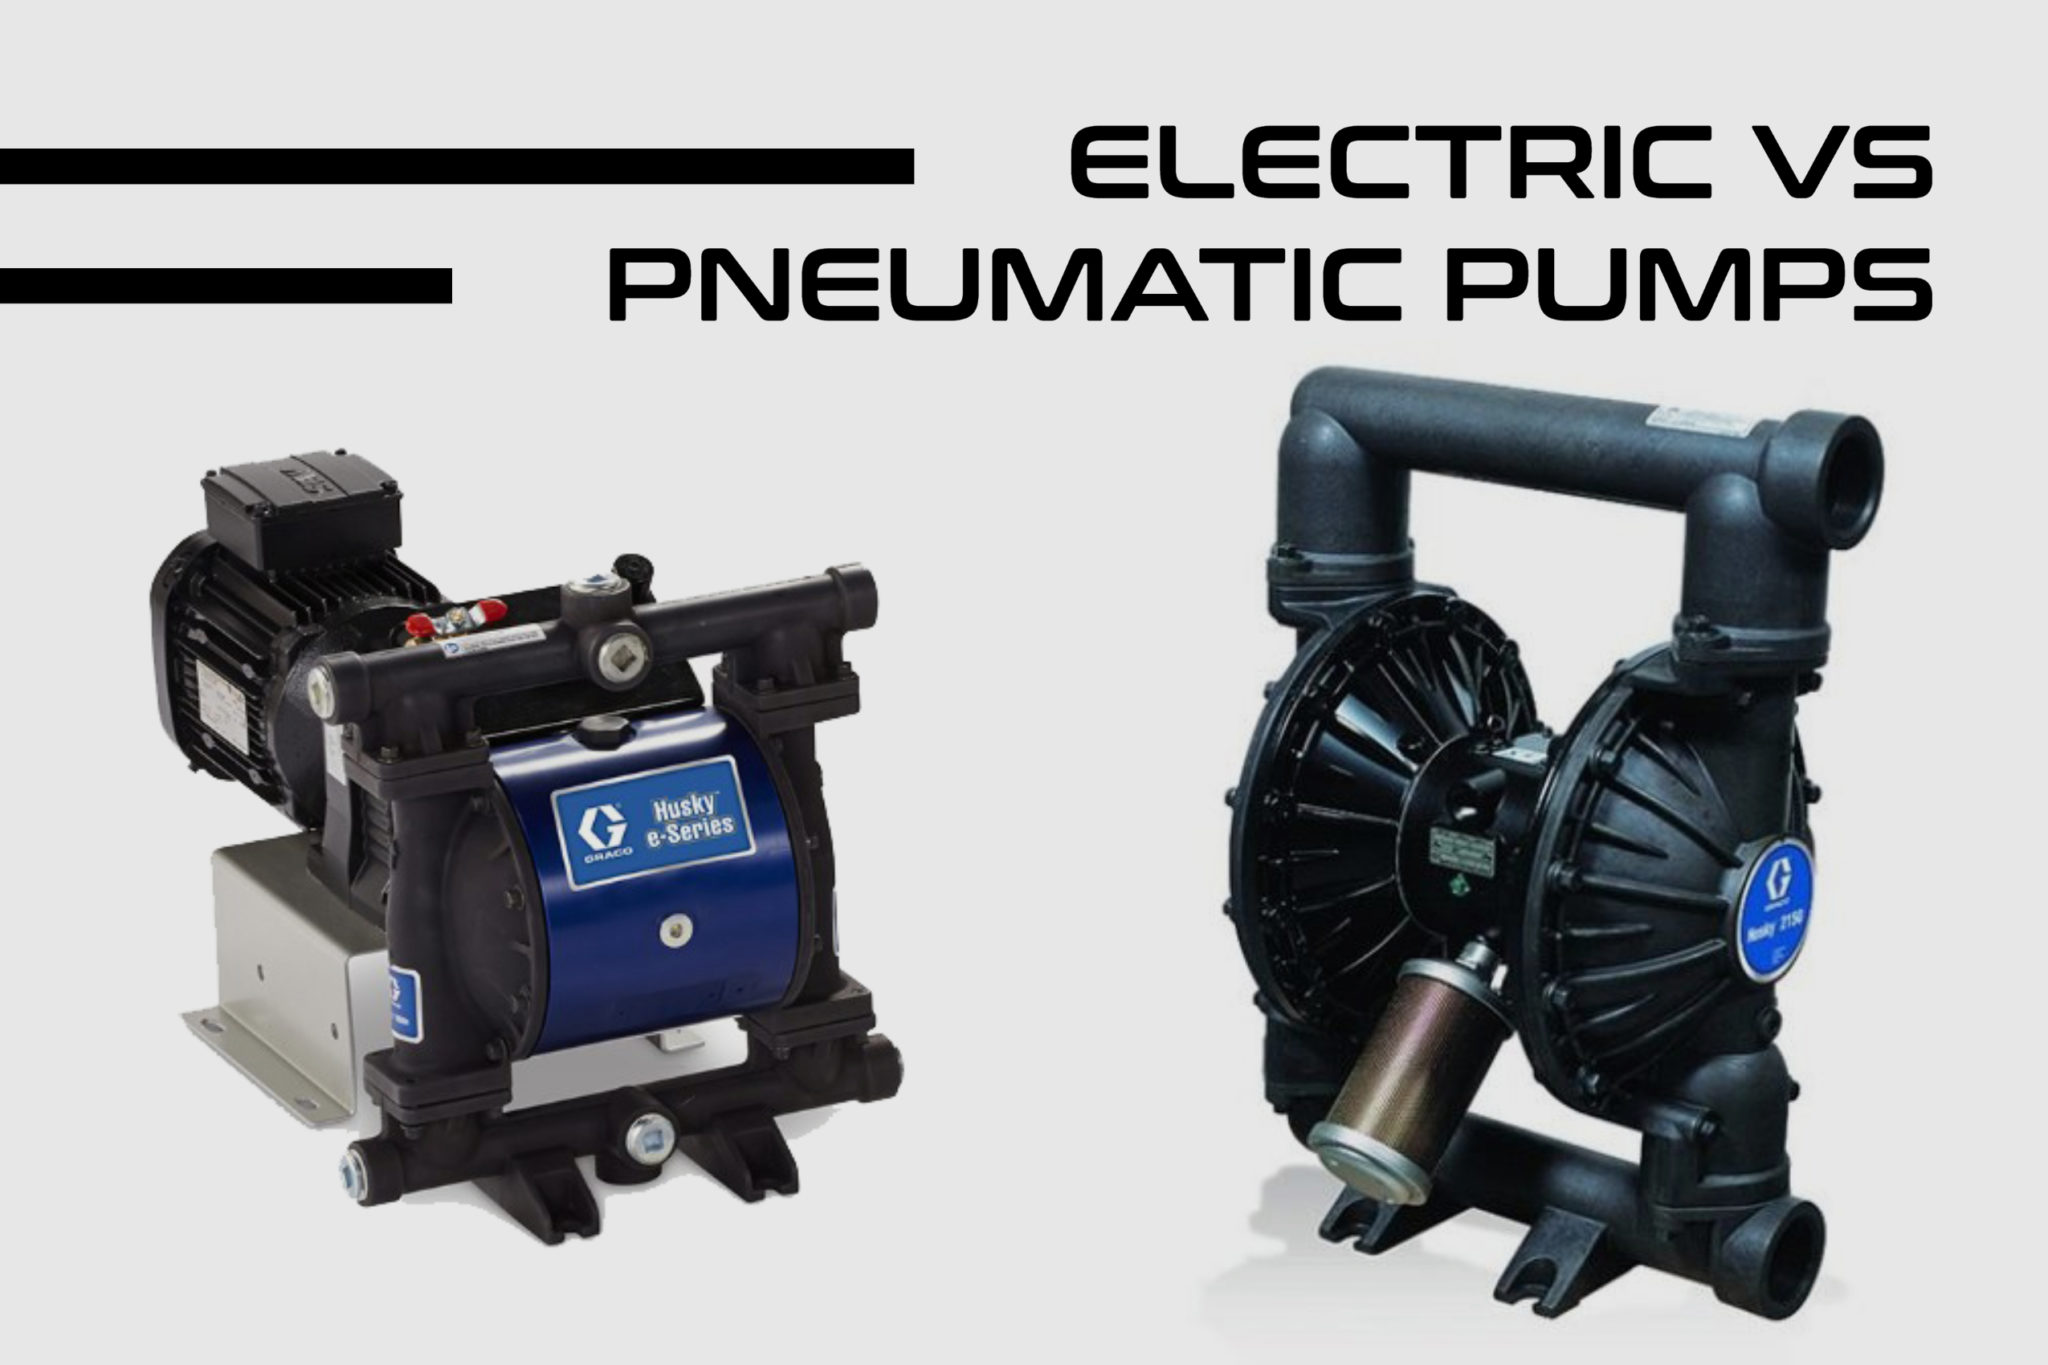 Electric vs. Pneumatic Pumps Energy Usage Comparison